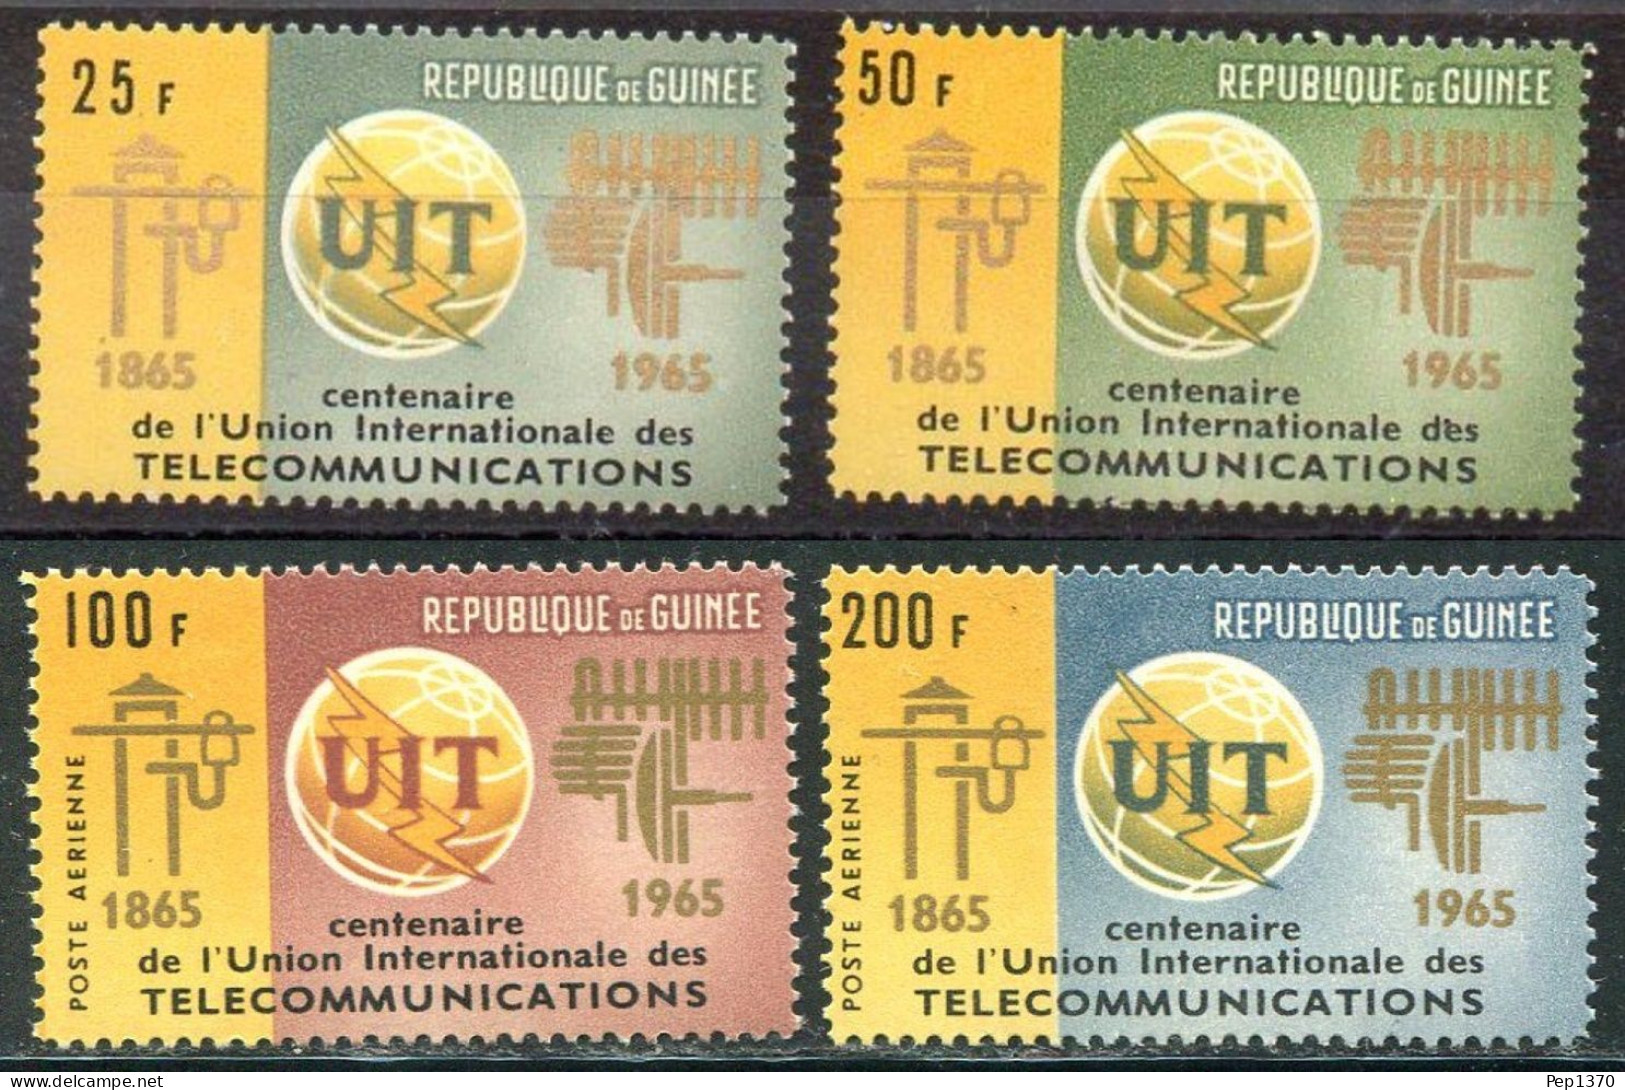 GUINEA 1965 - REPUBLIQUE DE GUINÉE -UIT - UNION INTERNACIONAL DE TELECOMUNICACIONES - YVERT 242/243**+ AEREOS 54/55** - Guinee (1958-...)